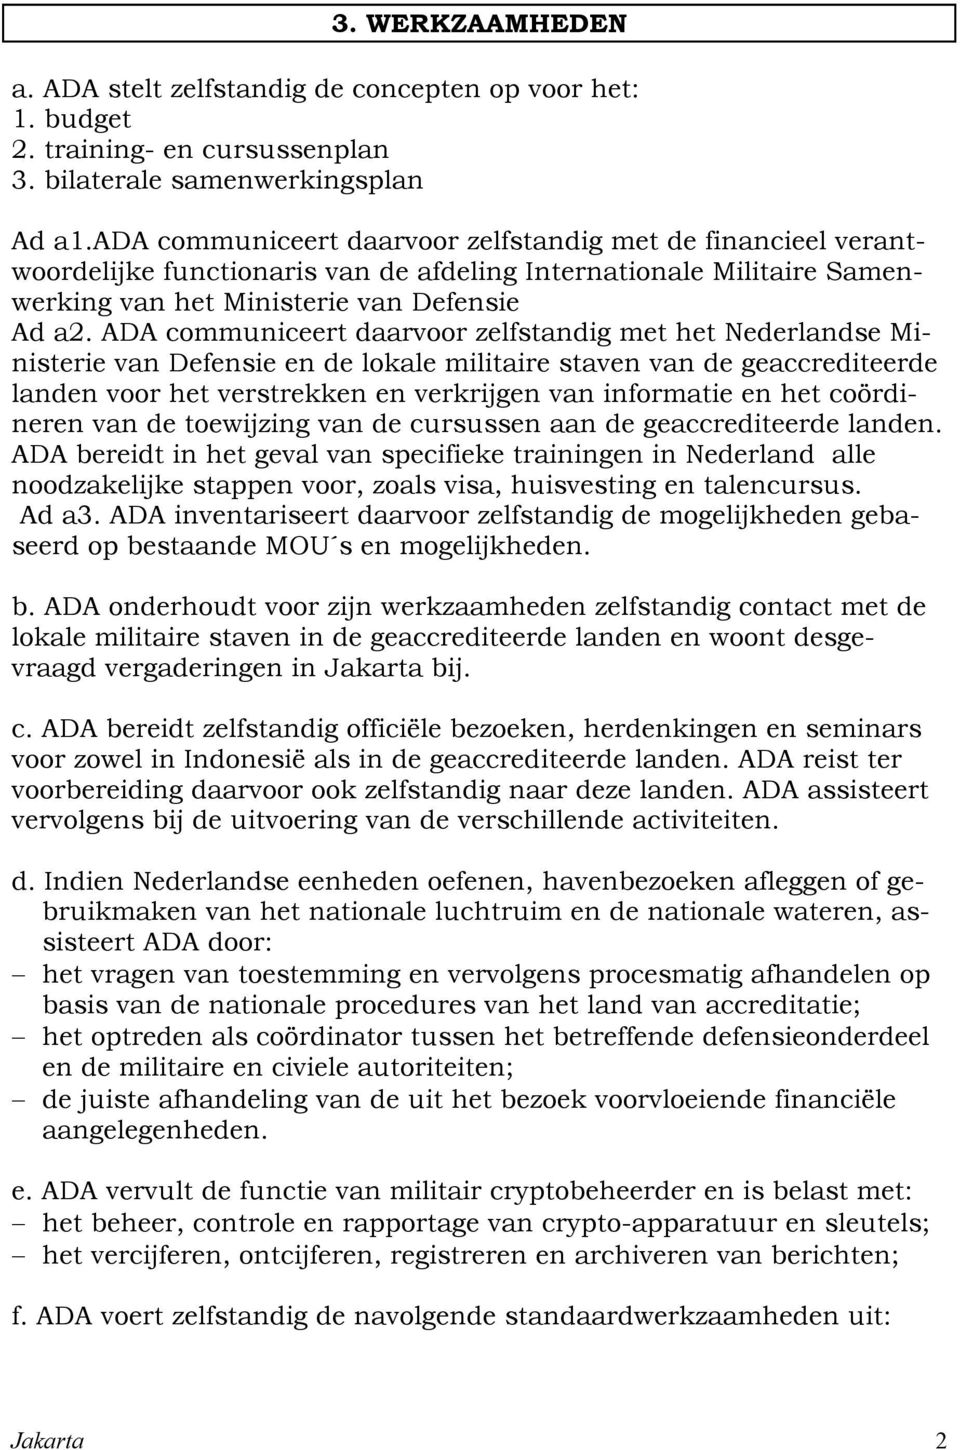 ADA communiceert daarvoor zelfstandig met het Nederlandse Ministerie van Defensie en de lokale militaire staven van de geaccrediteerde landen voor het verstrekken en verkrijgen van informatie en het